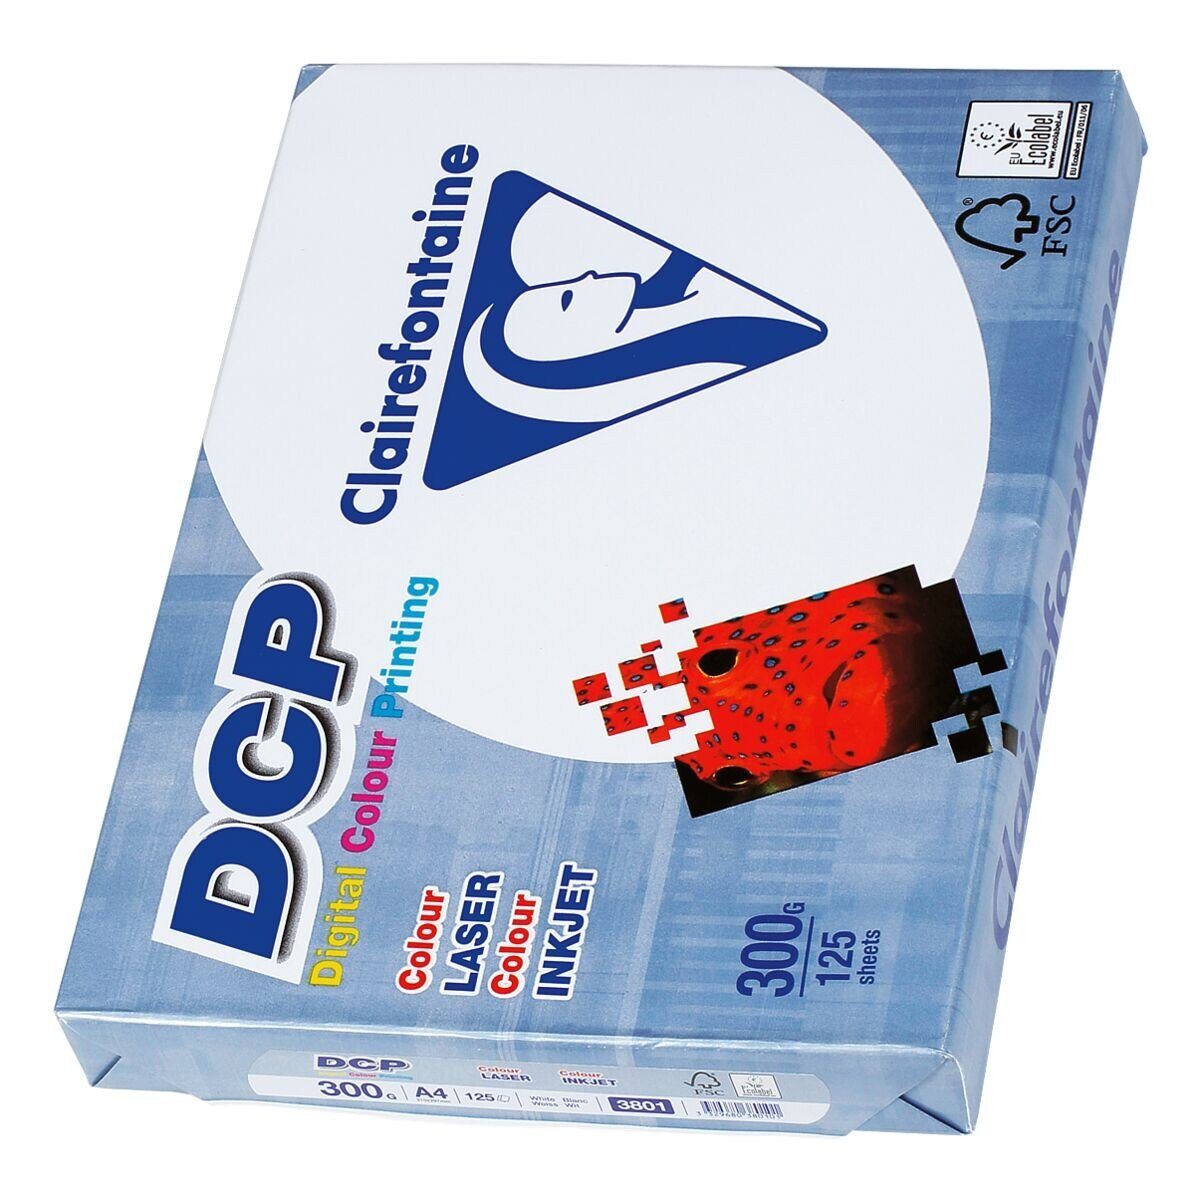 CLAIREFONTAINE Farblaser-Druckerpapier DCP, Format DIN A4, 300 g/m², 172 CIE, 125 Blatt